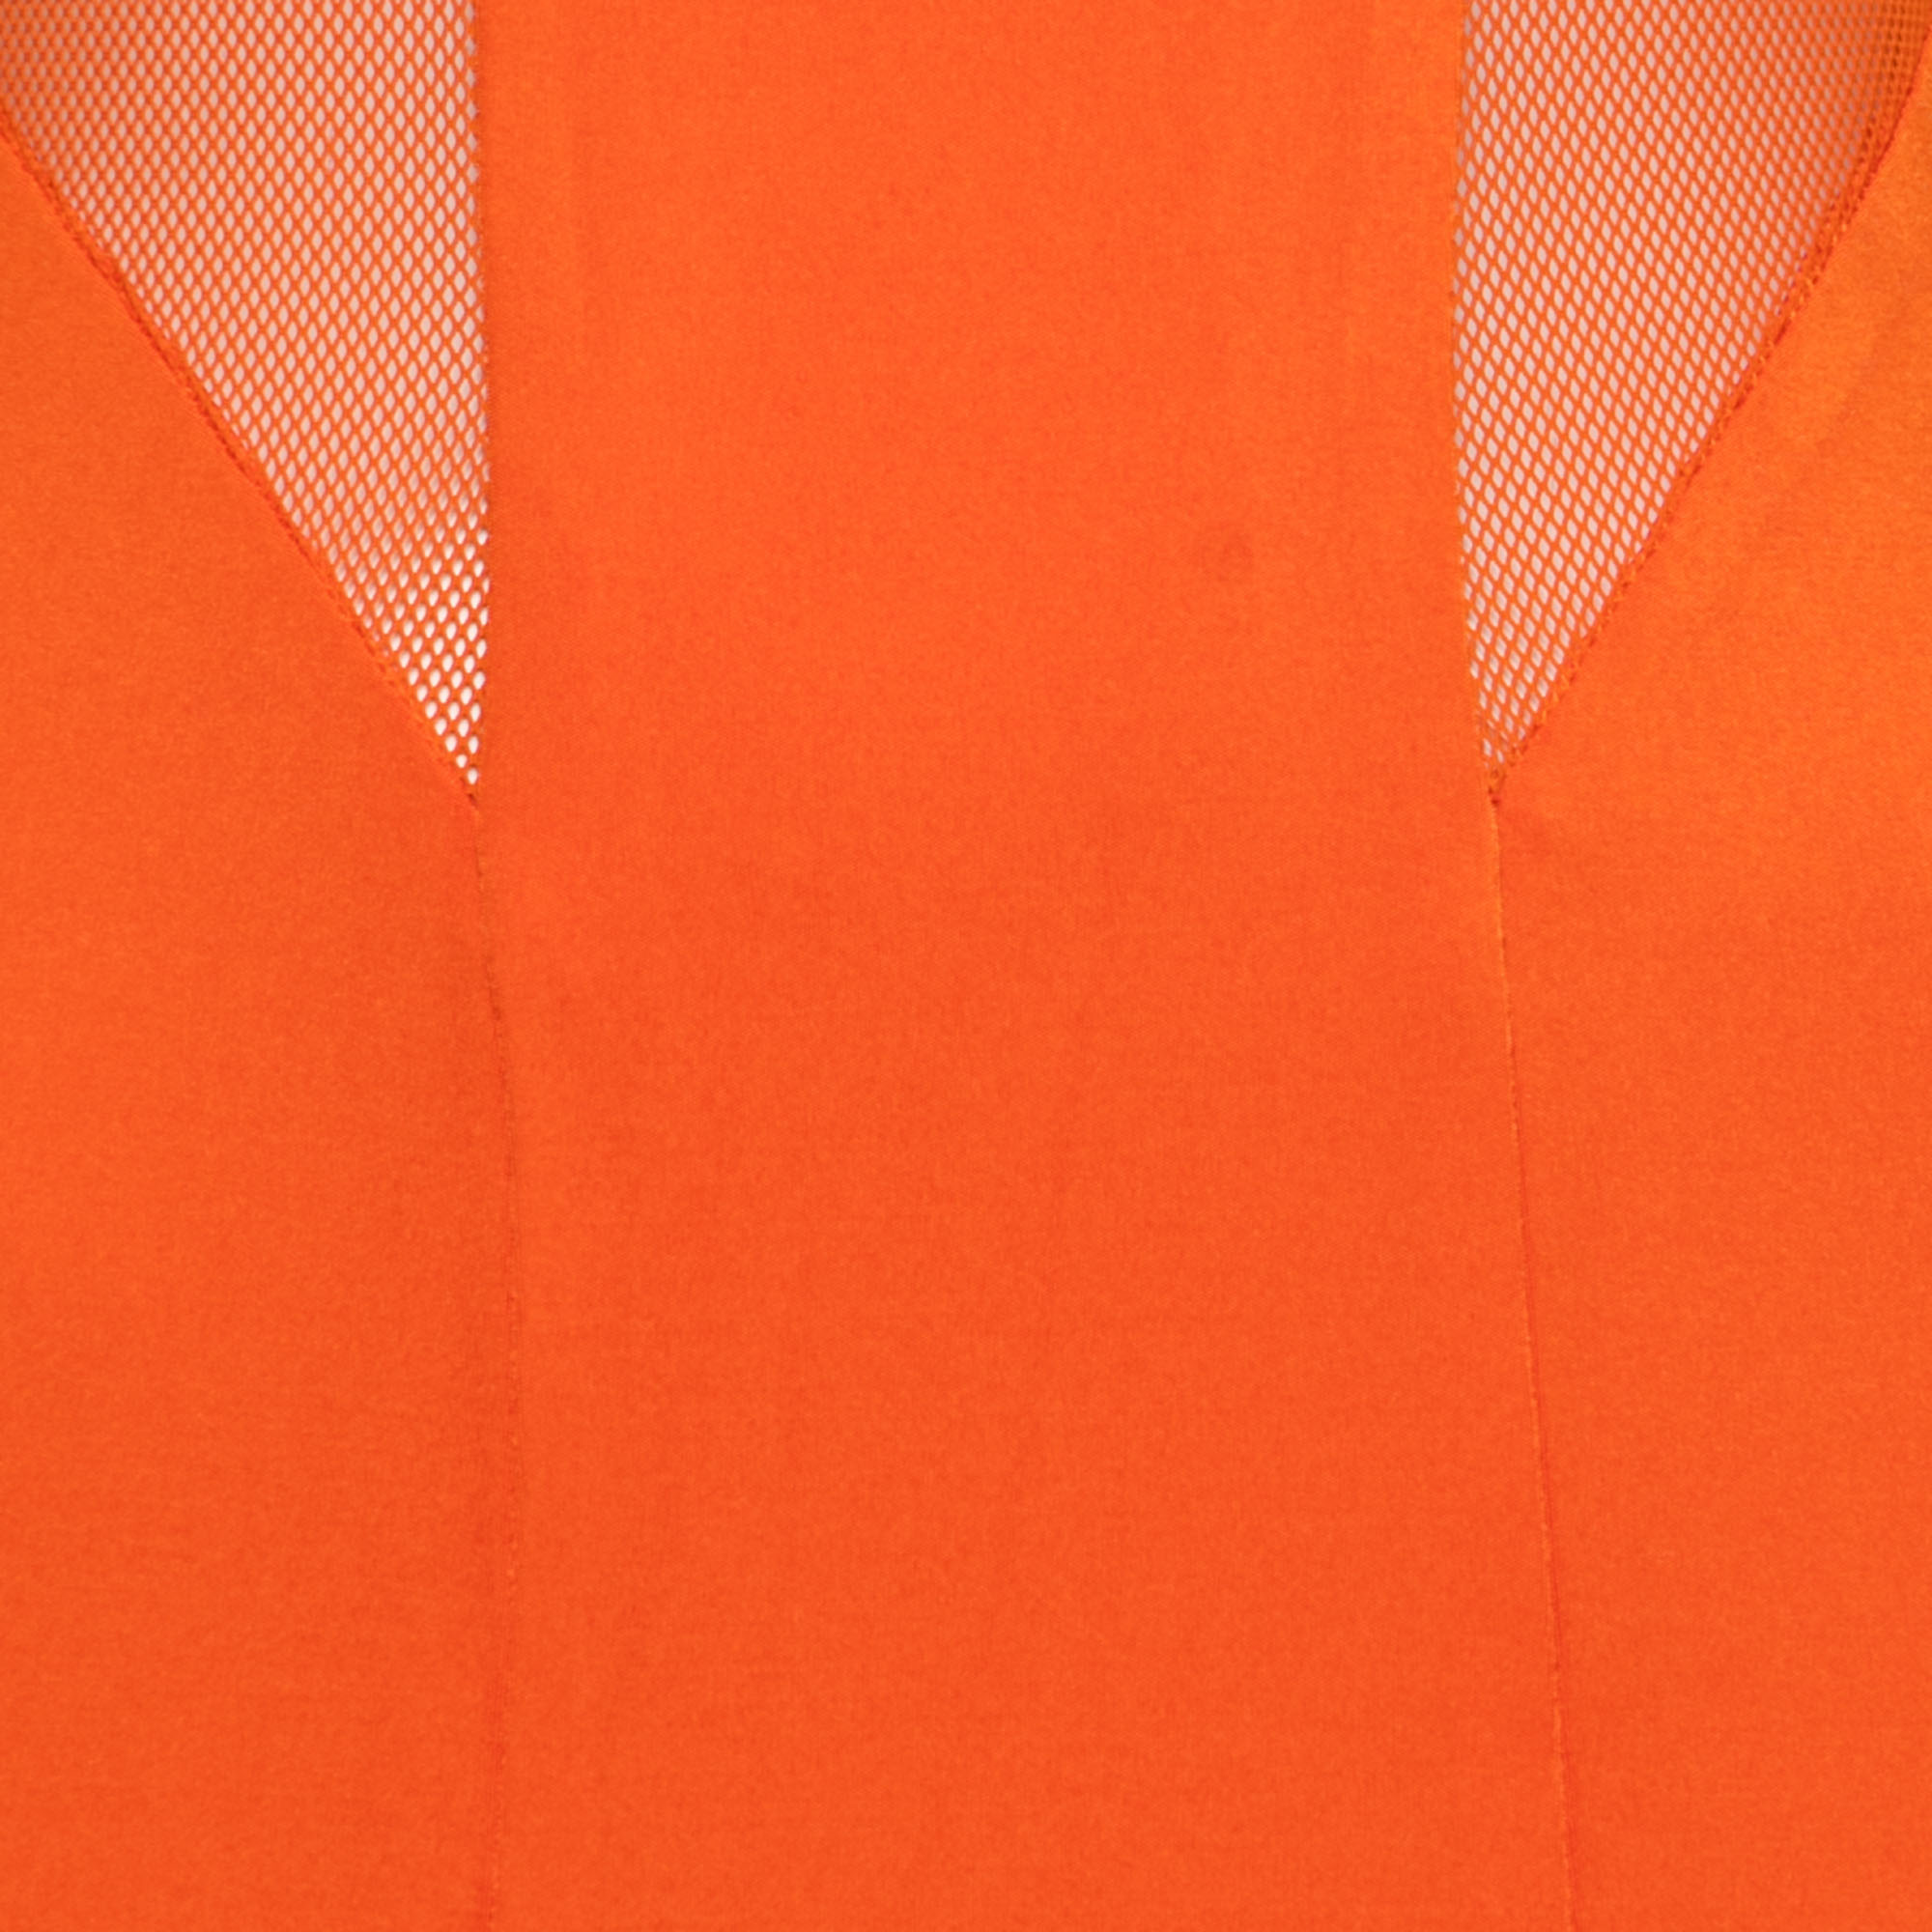 Cushnie Et Ochs Tangerine Orange Stretch Satin Jersey Mesh Paneled Gown S